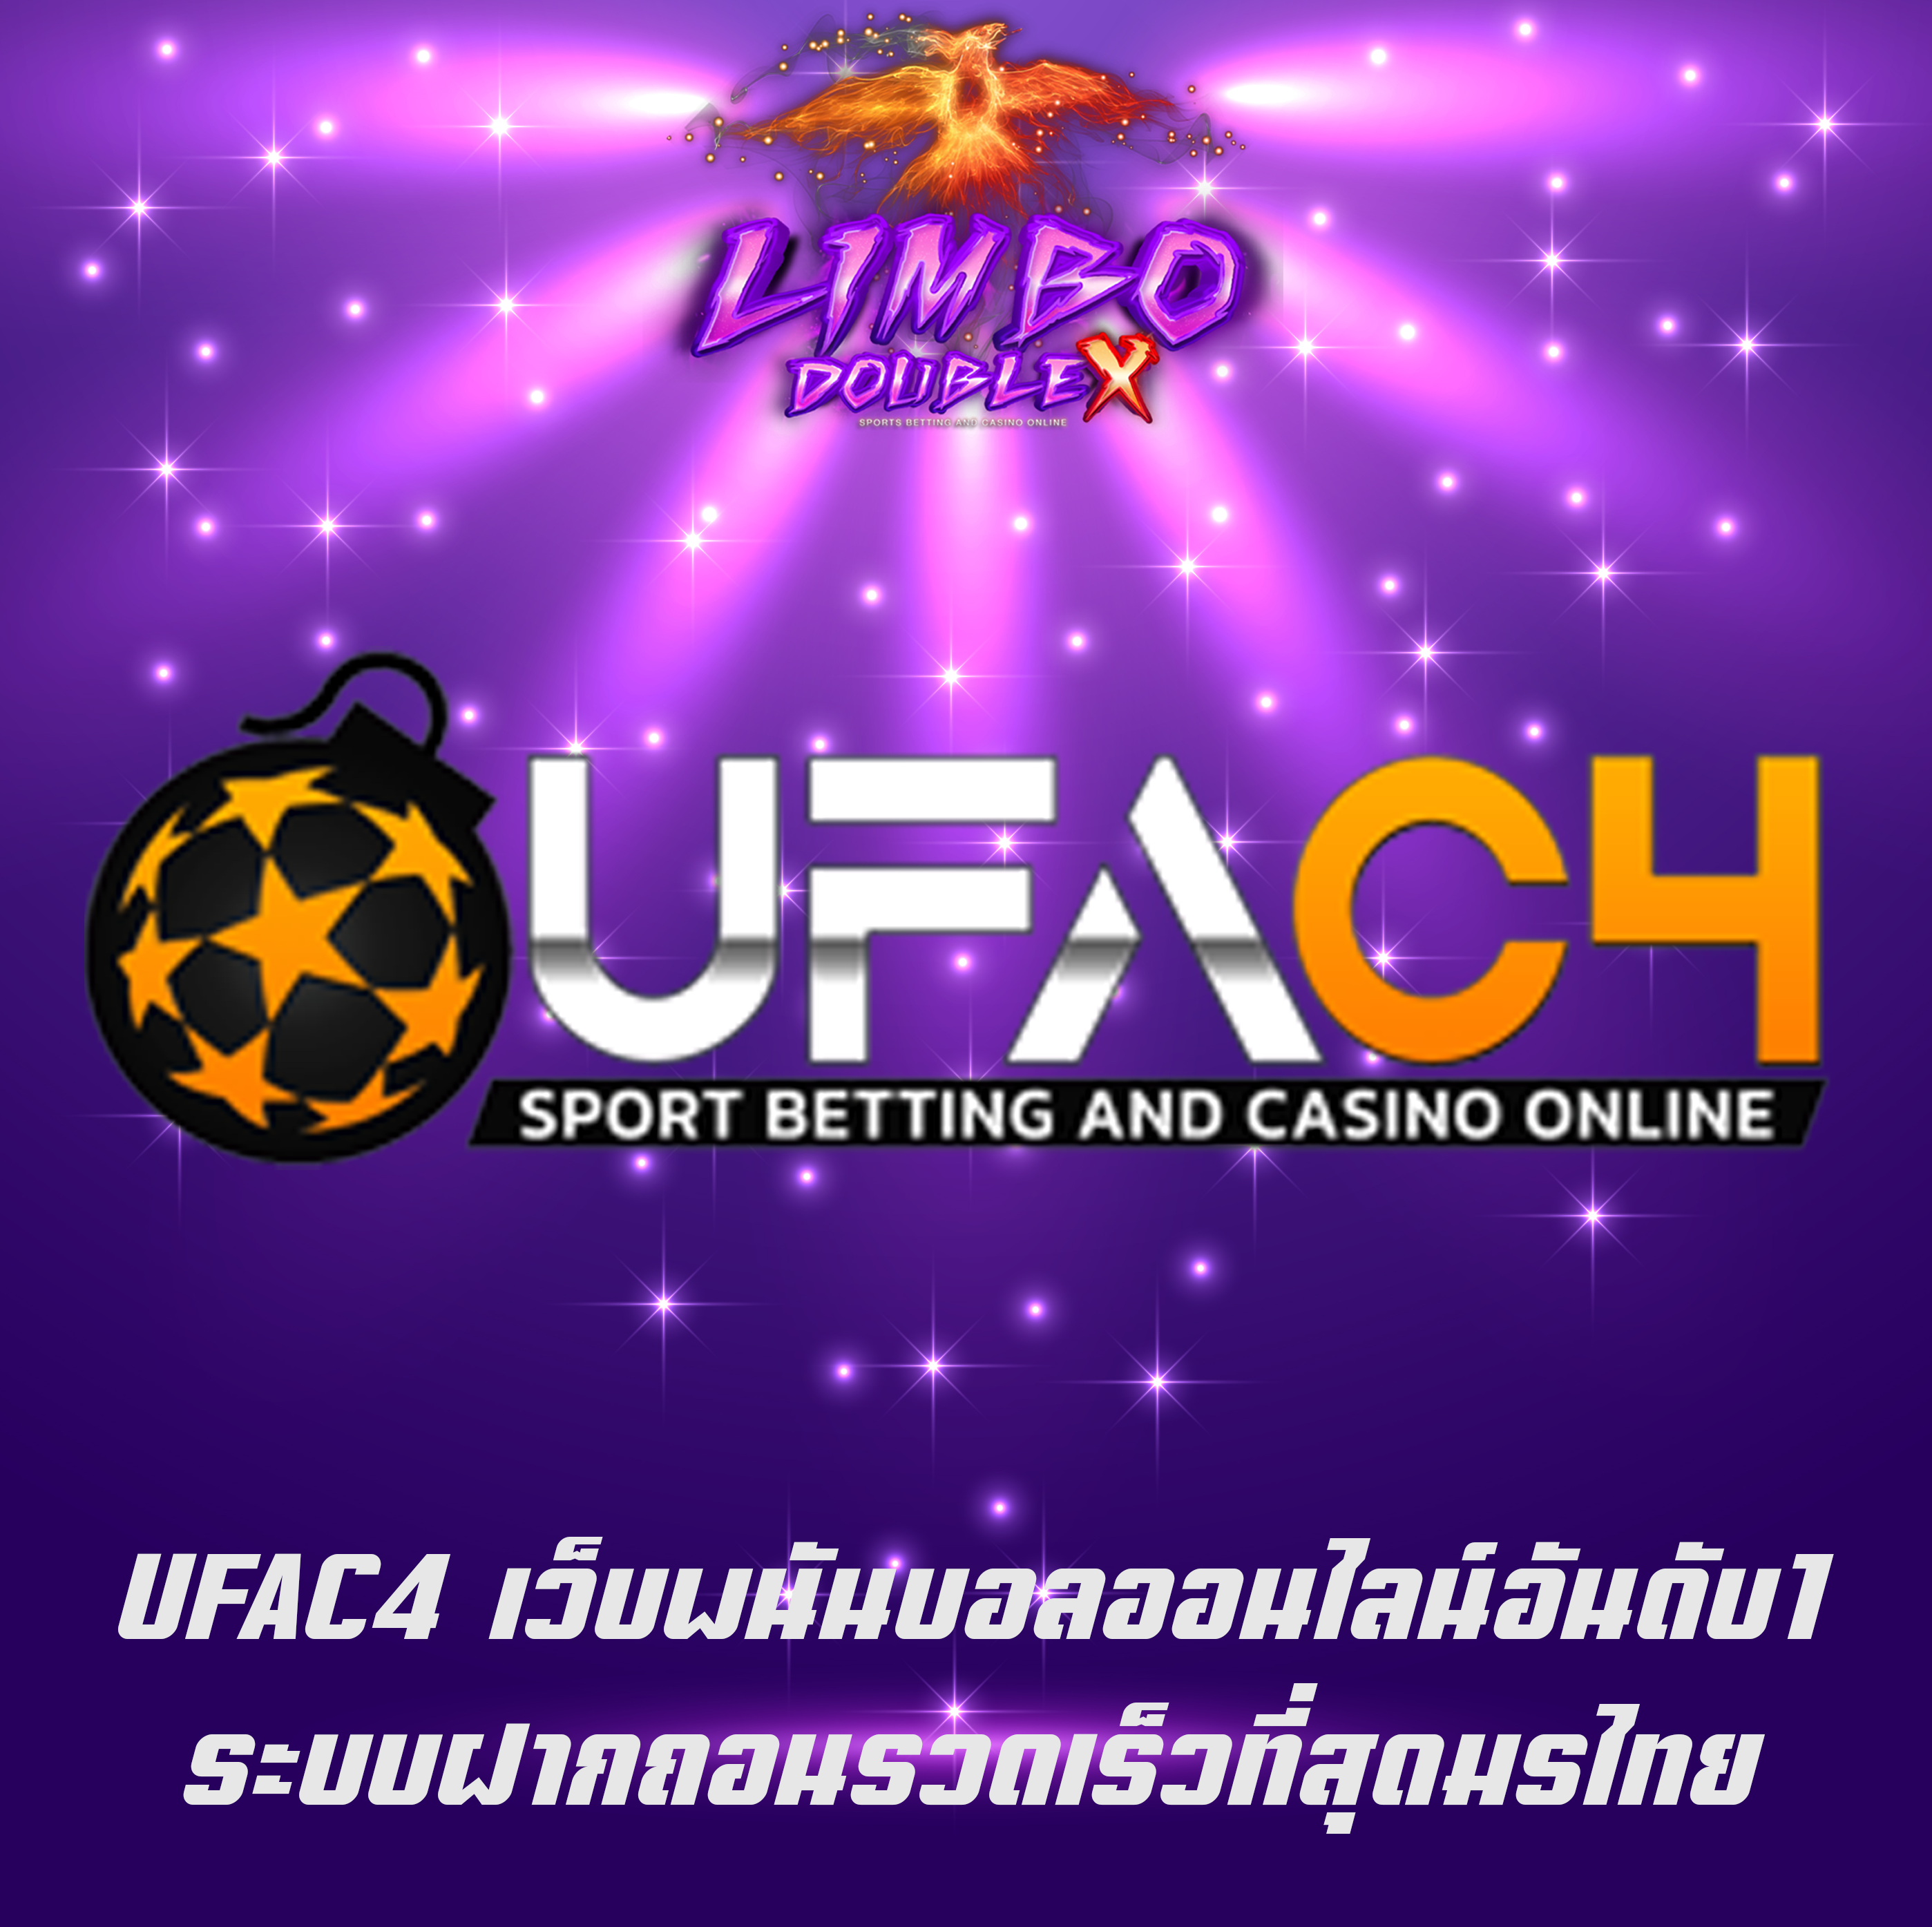 UFAC4 เว็บพนันบอลออนไลน์อันดับ1 ระบบฝากถอนรวดเร็วที่สุดมรไทย